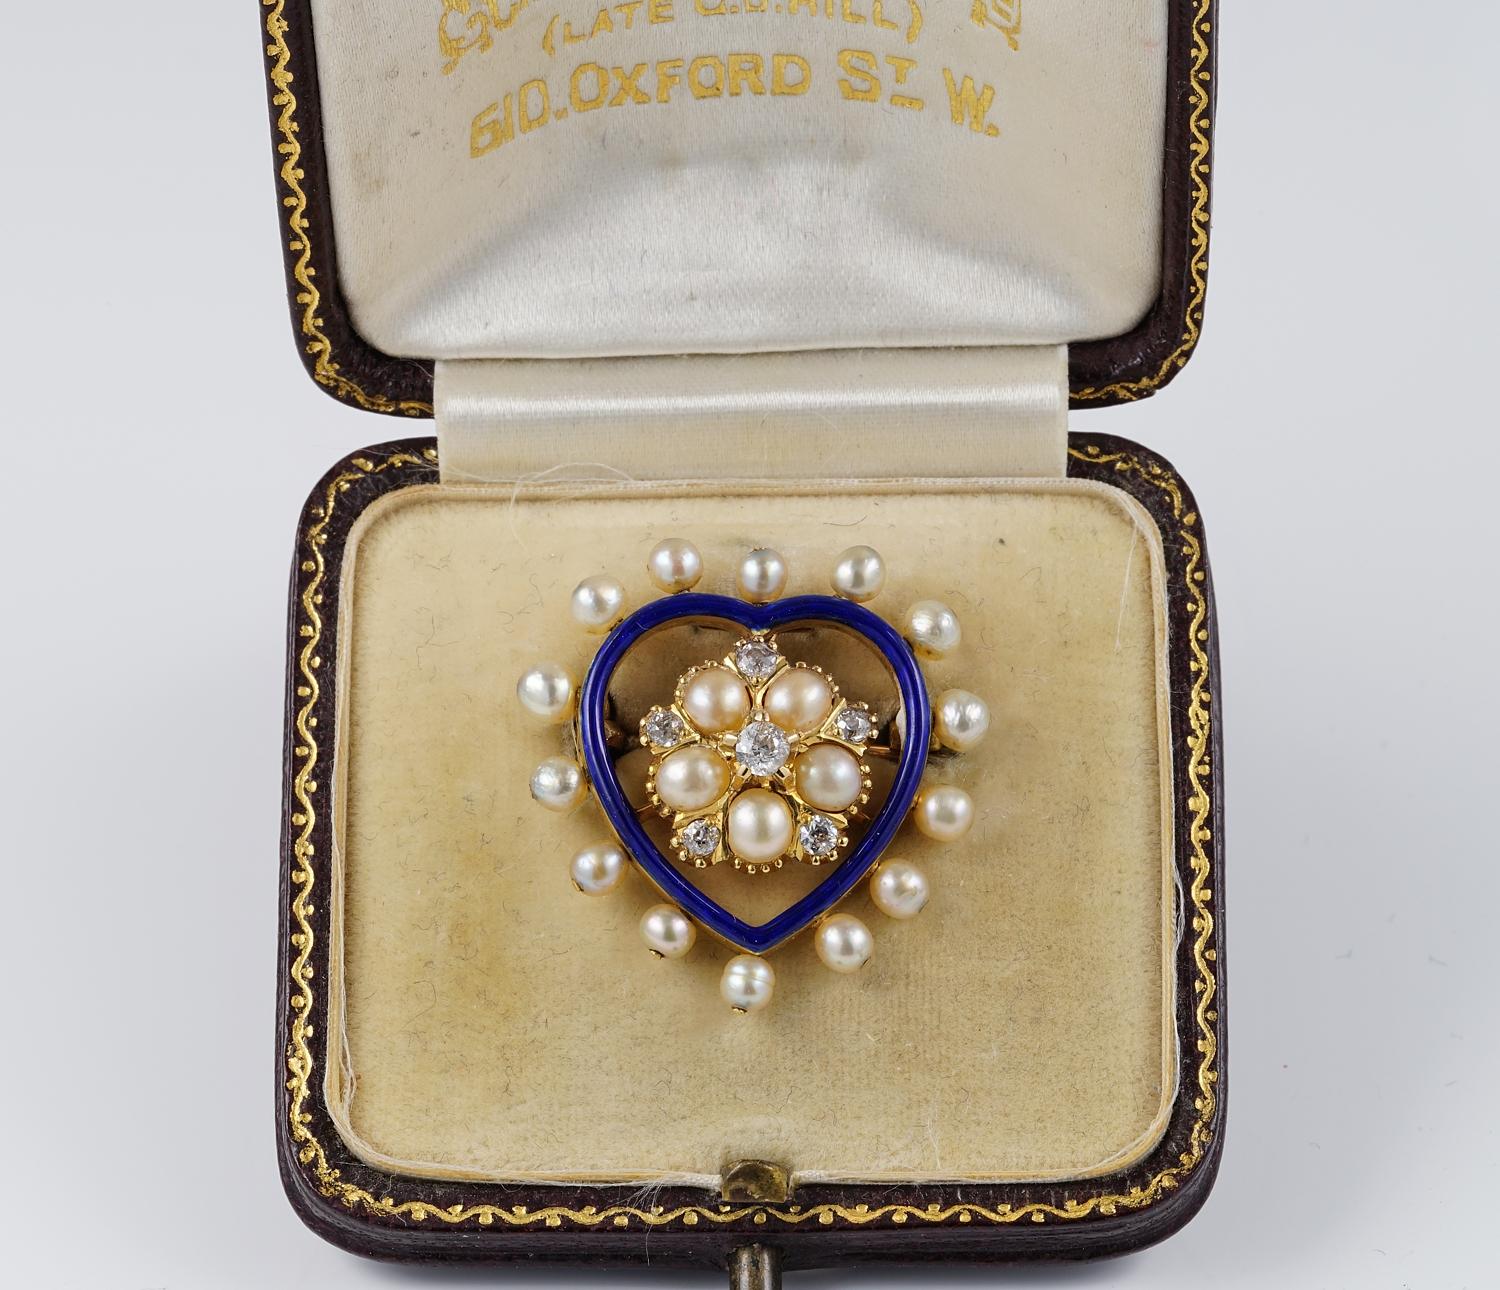 Ce pendentif/broche en forme de cœur est d'époque victorienne, 1880 env.
exprimant la tradition du romantisme de l'ère victorienne, réalisée en or massif 18 KT
L'ensemble est complété par une combinaison de  de diamants, de perles naturelles  et un